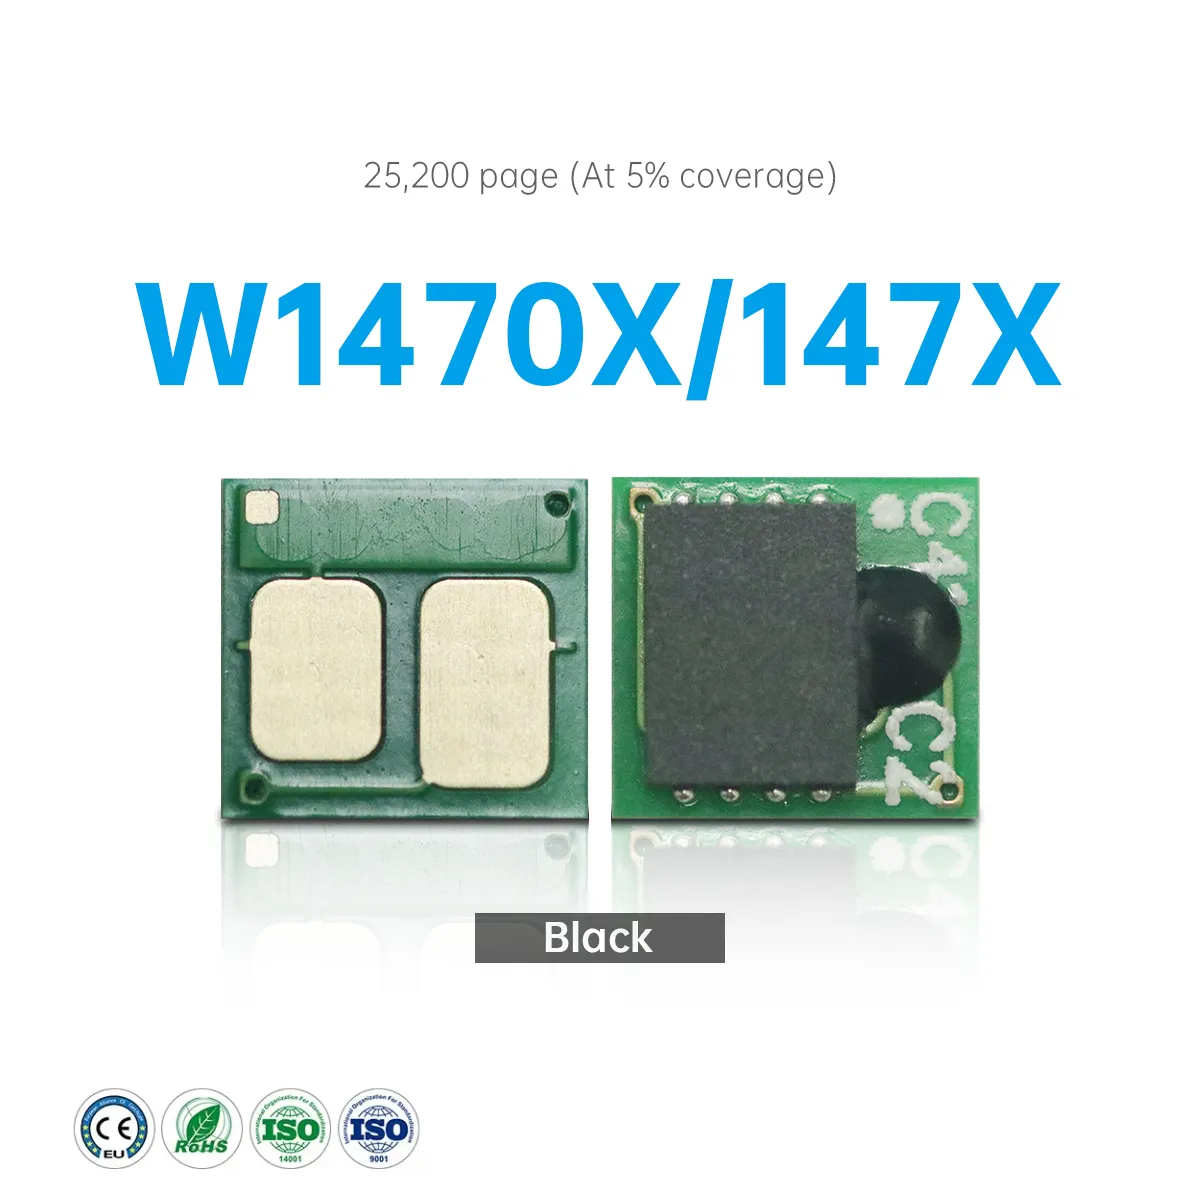 Cartucho de chip para cartucho de toner HP W1470A/147A, um chip de cartucho CHIP W1470A/147A de uso único